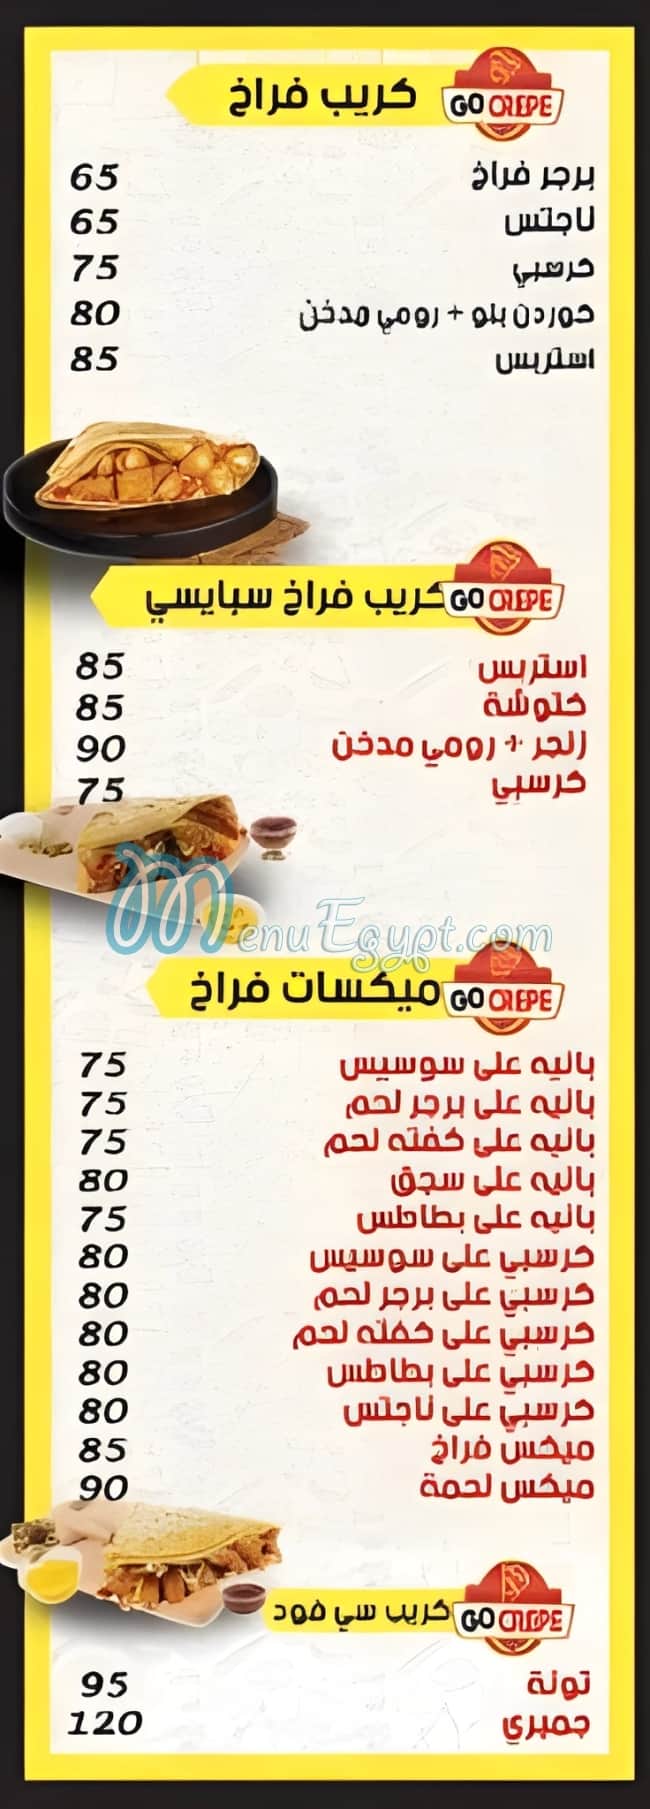 Go Crepe tagmo3 khames menu Egypt 1